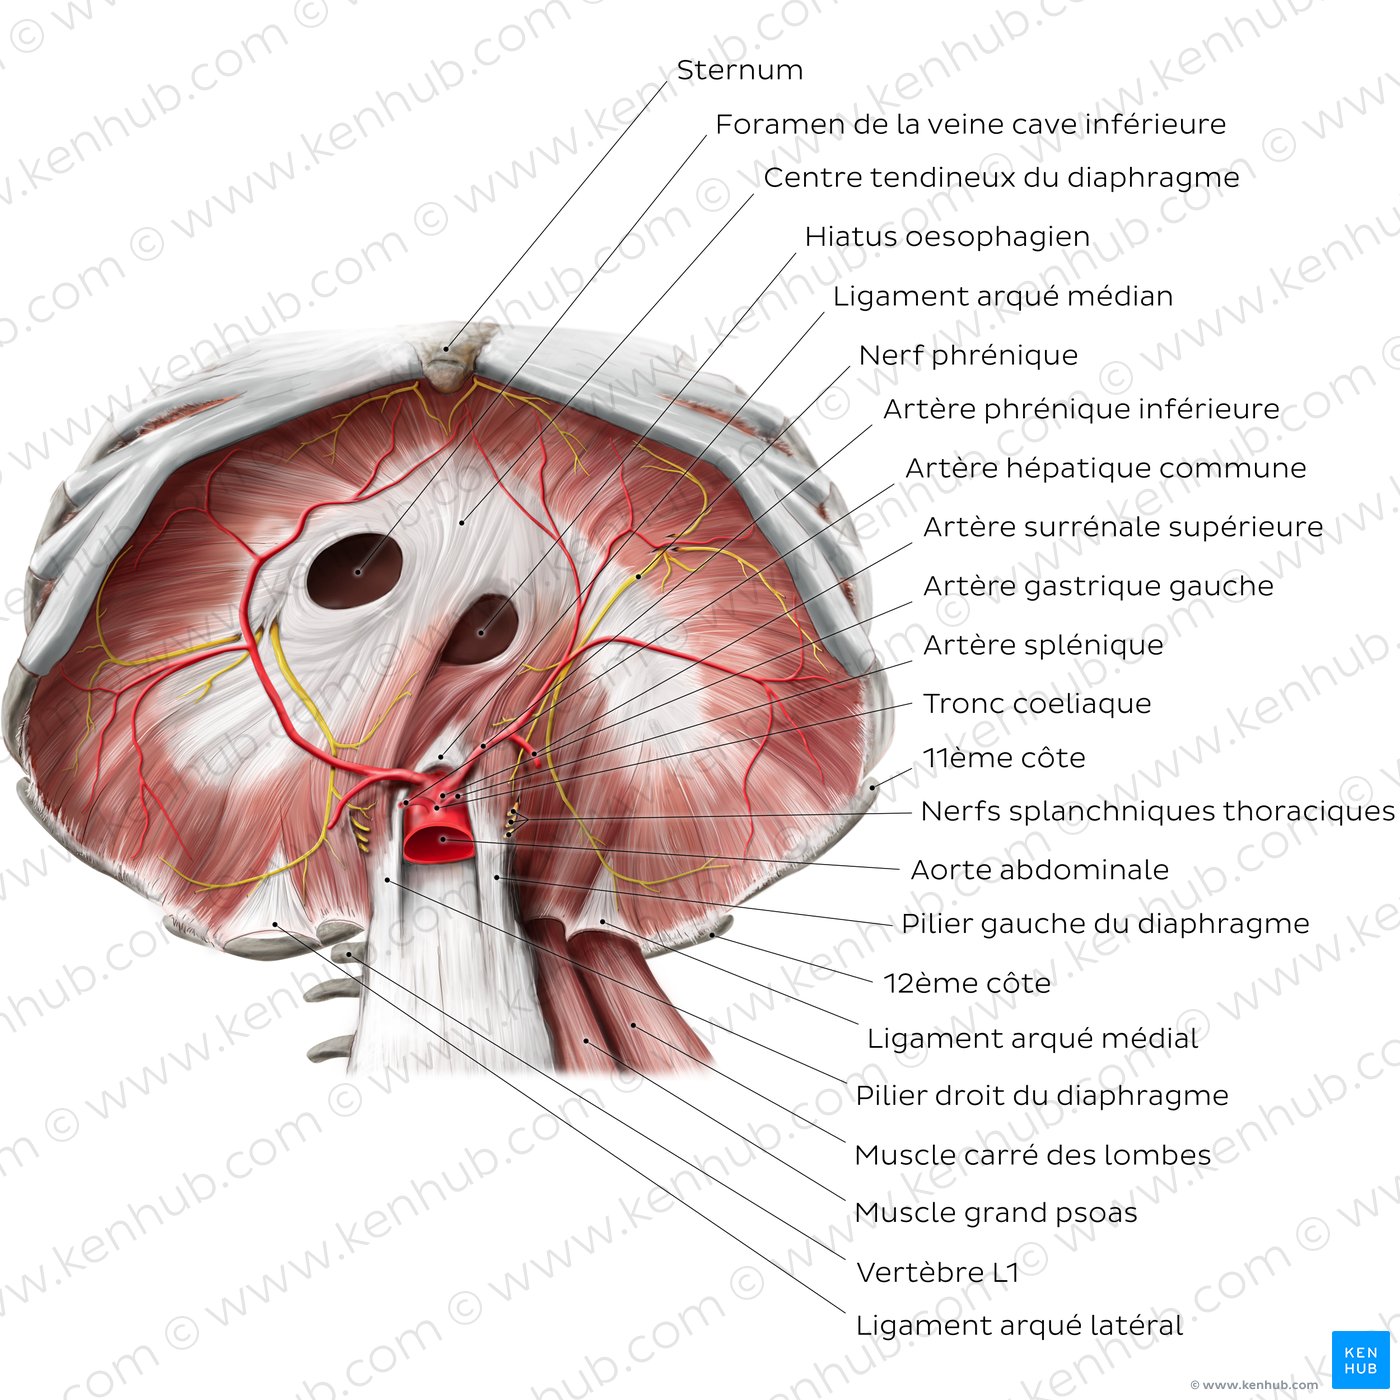 Face abdominale du diaphragme (schéma)